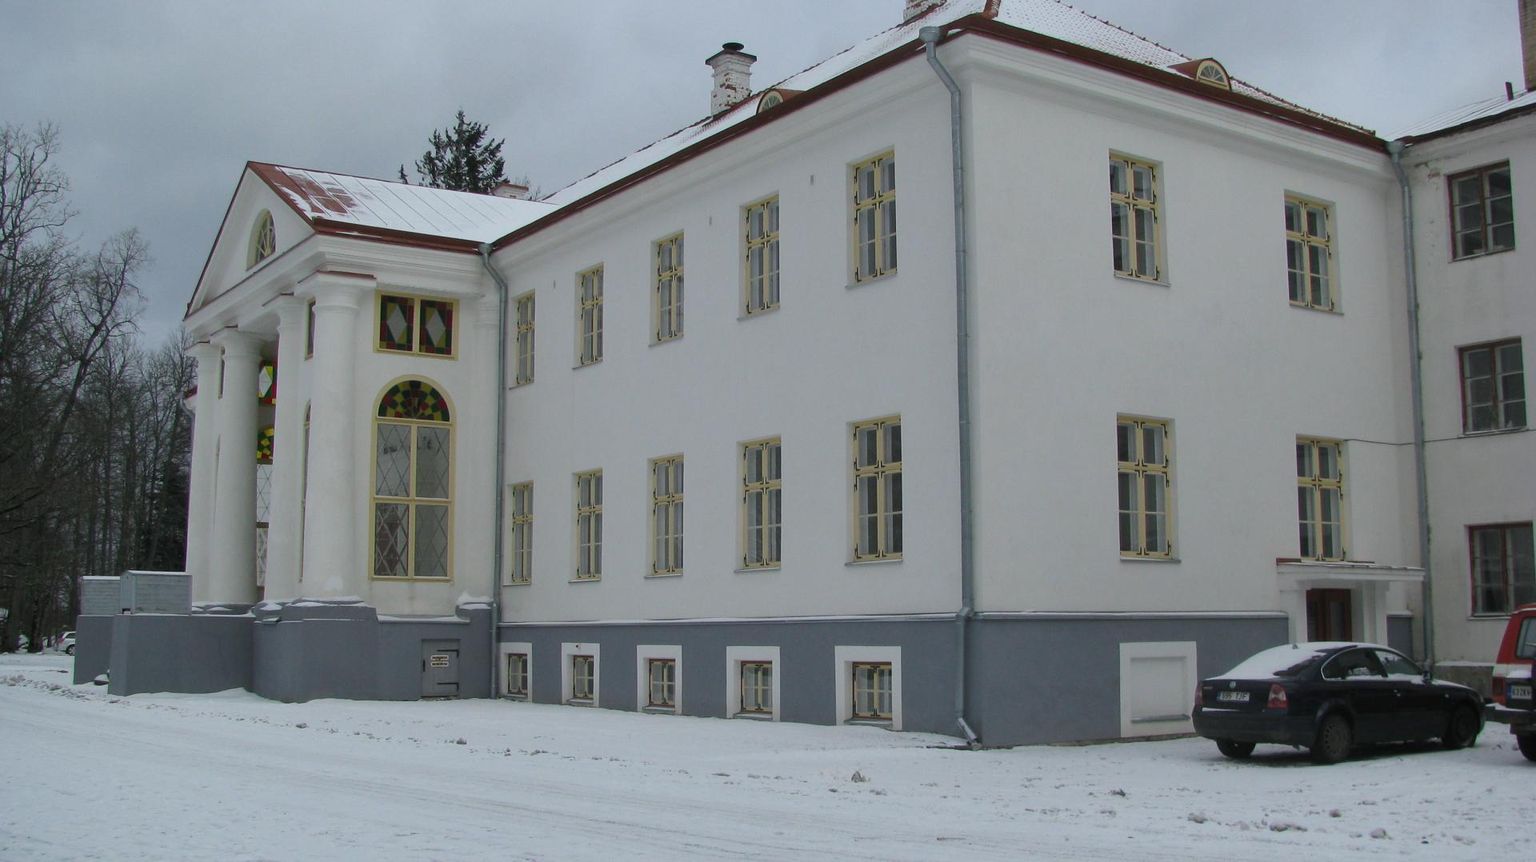 Voltveti mõisa häärber valmis 1830. aastal ja on täius­likult renoveeritud ajal, mil seal töötas Pärnumaa kutsehariduskeskuse Tihemetsa õppekoht.